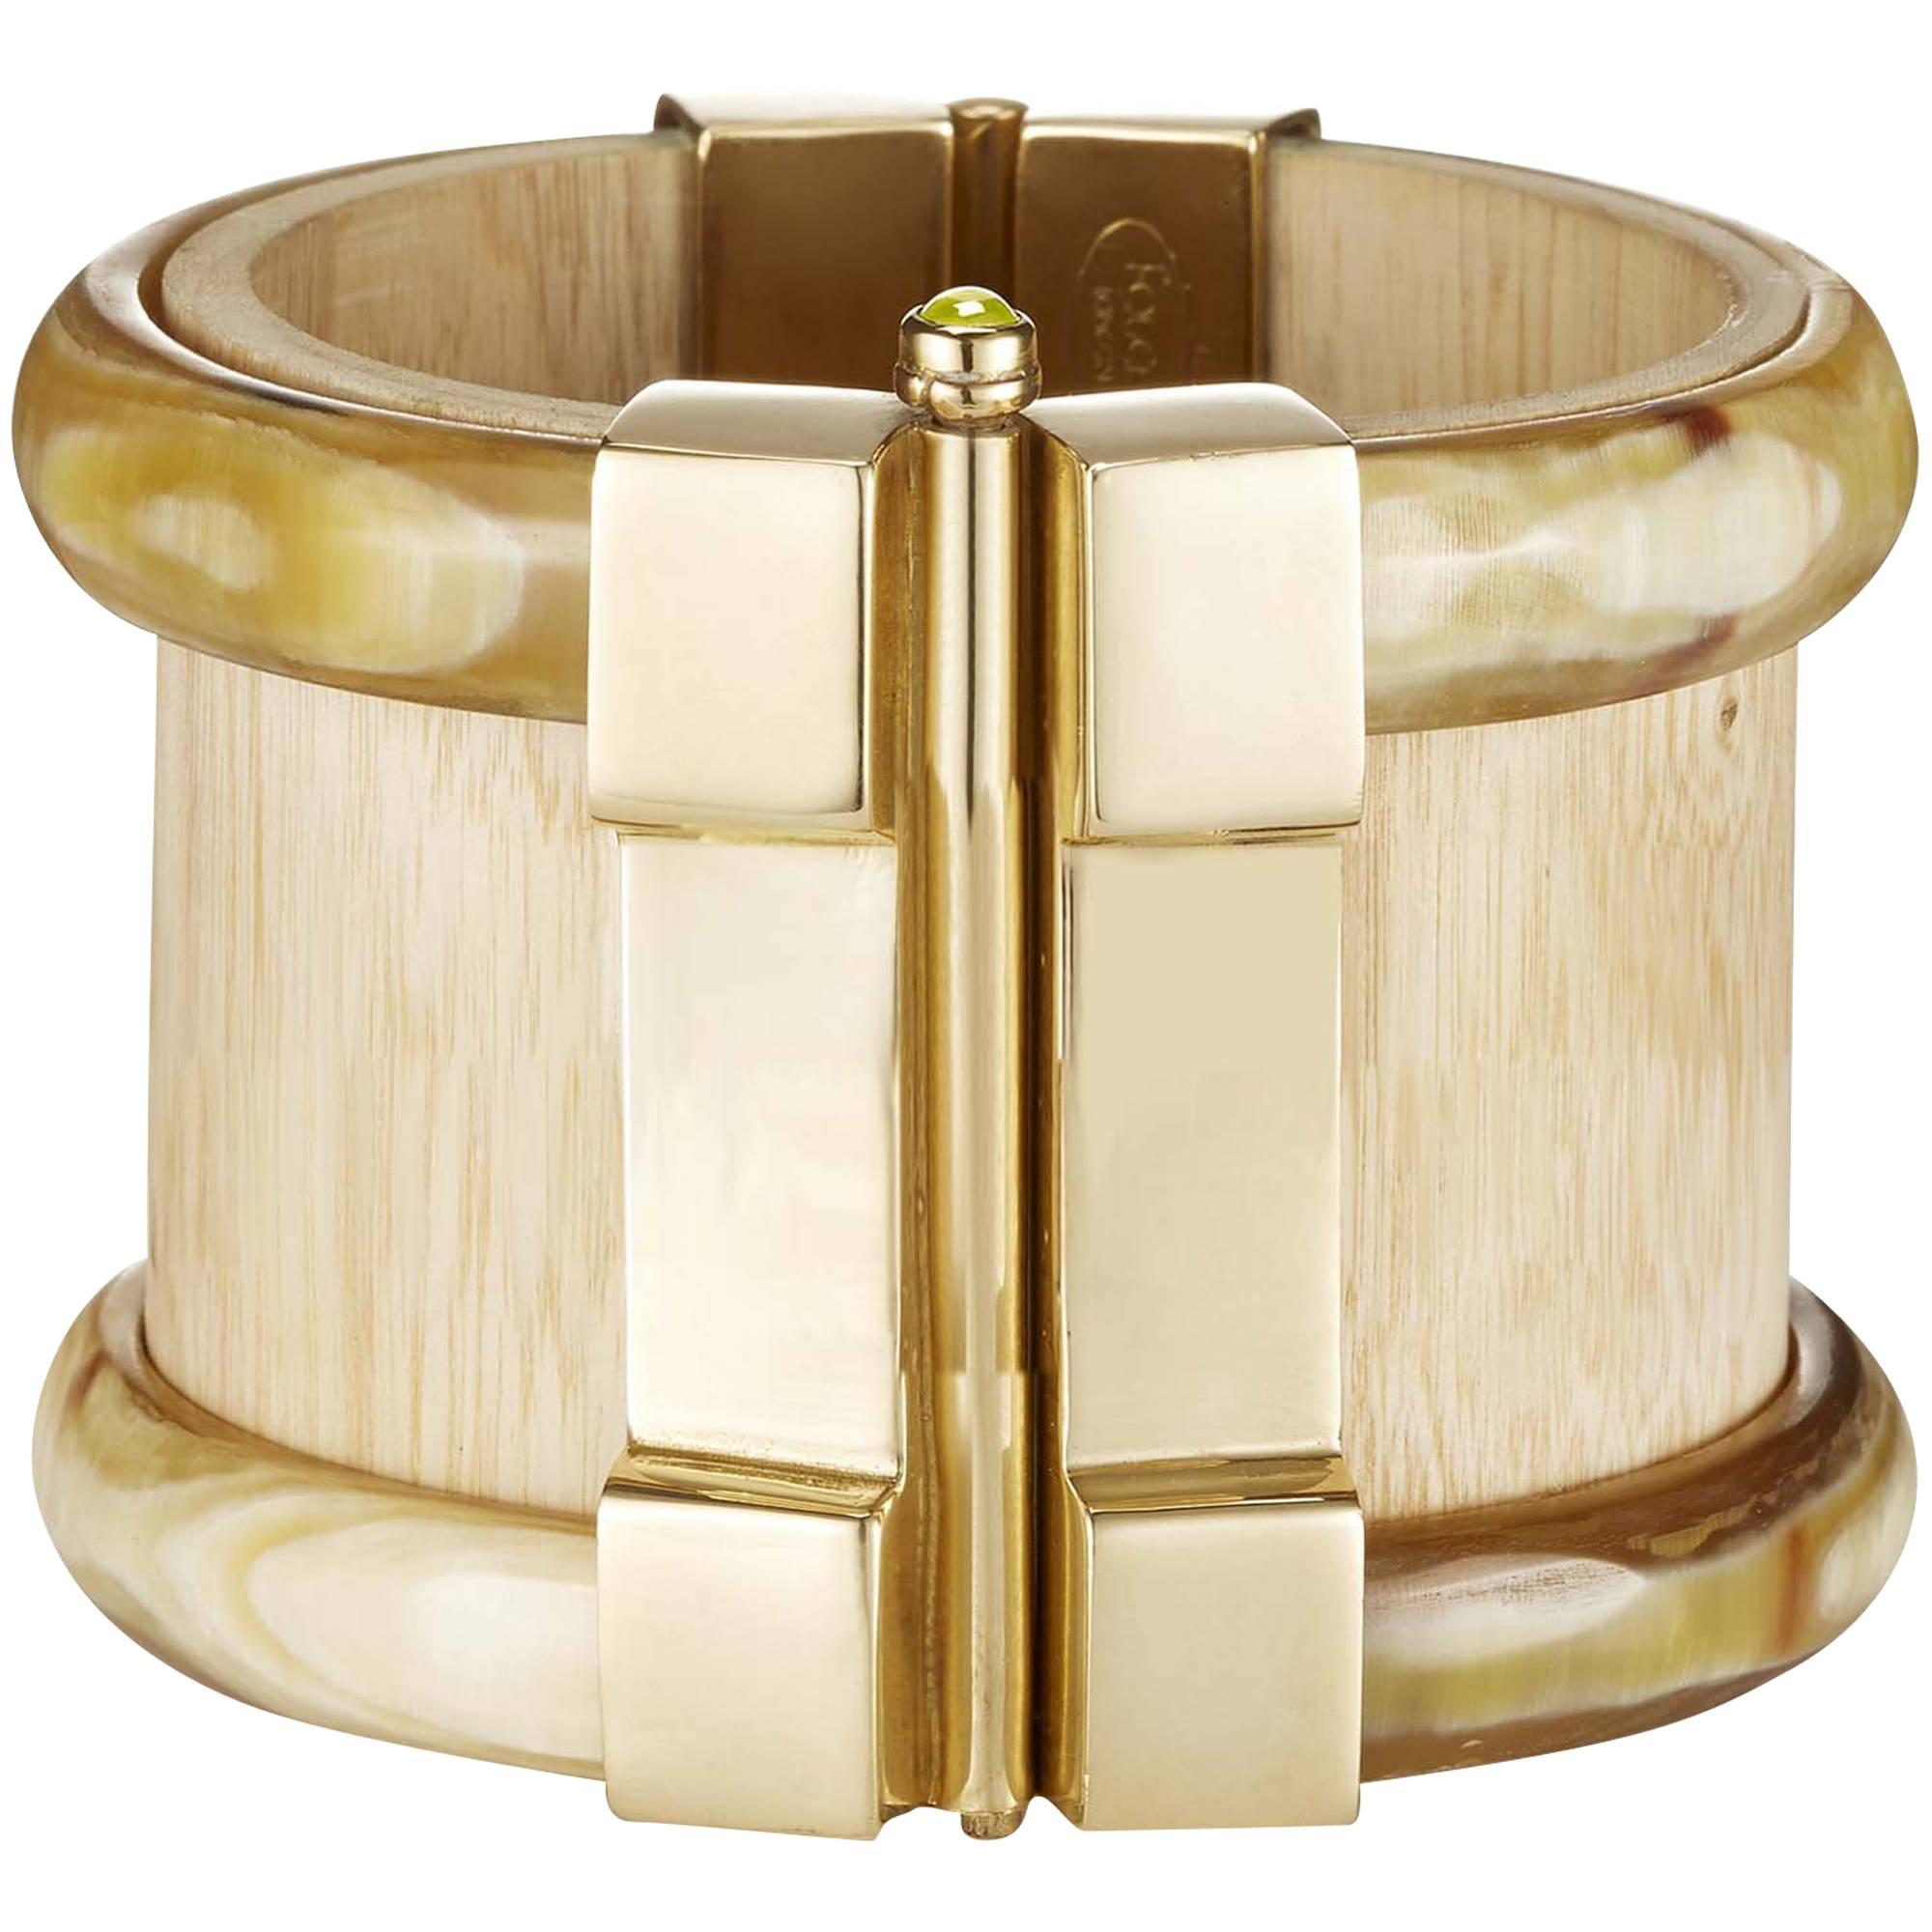 Fouche Bespoke Horn Wood Fire Opal Cuff Bracelet For Sale